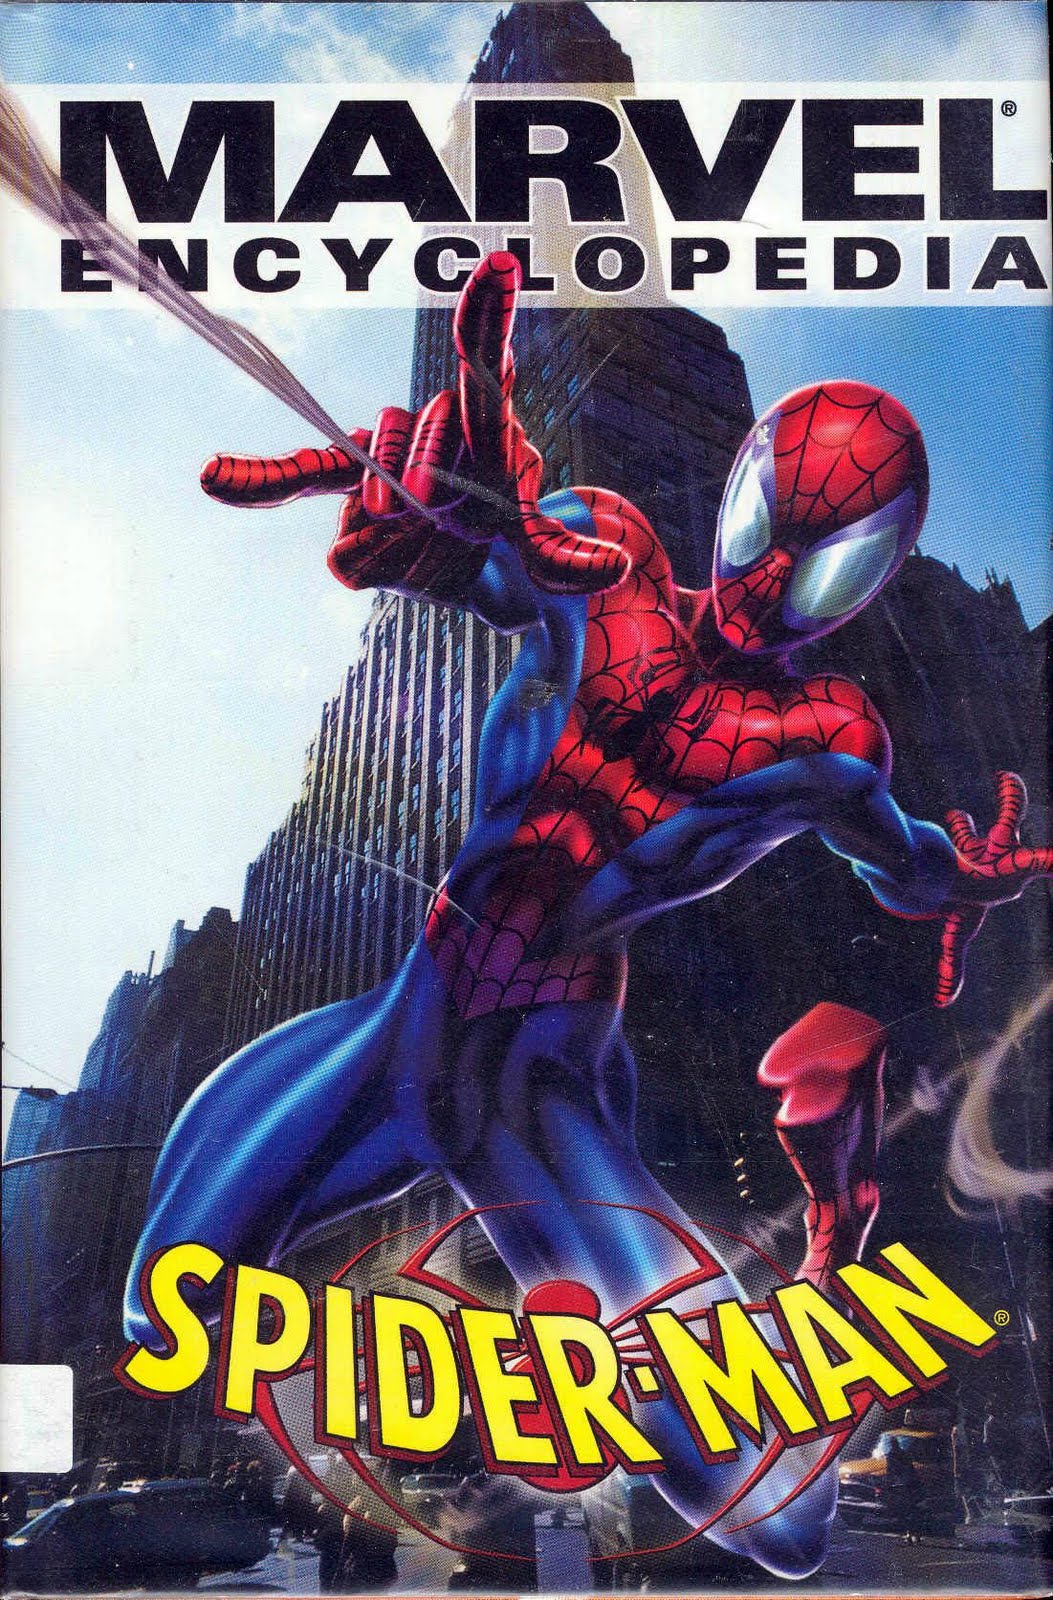 Marvel Encyclopedia Vol 1 Spider-Man | Marvel Database | Fandom